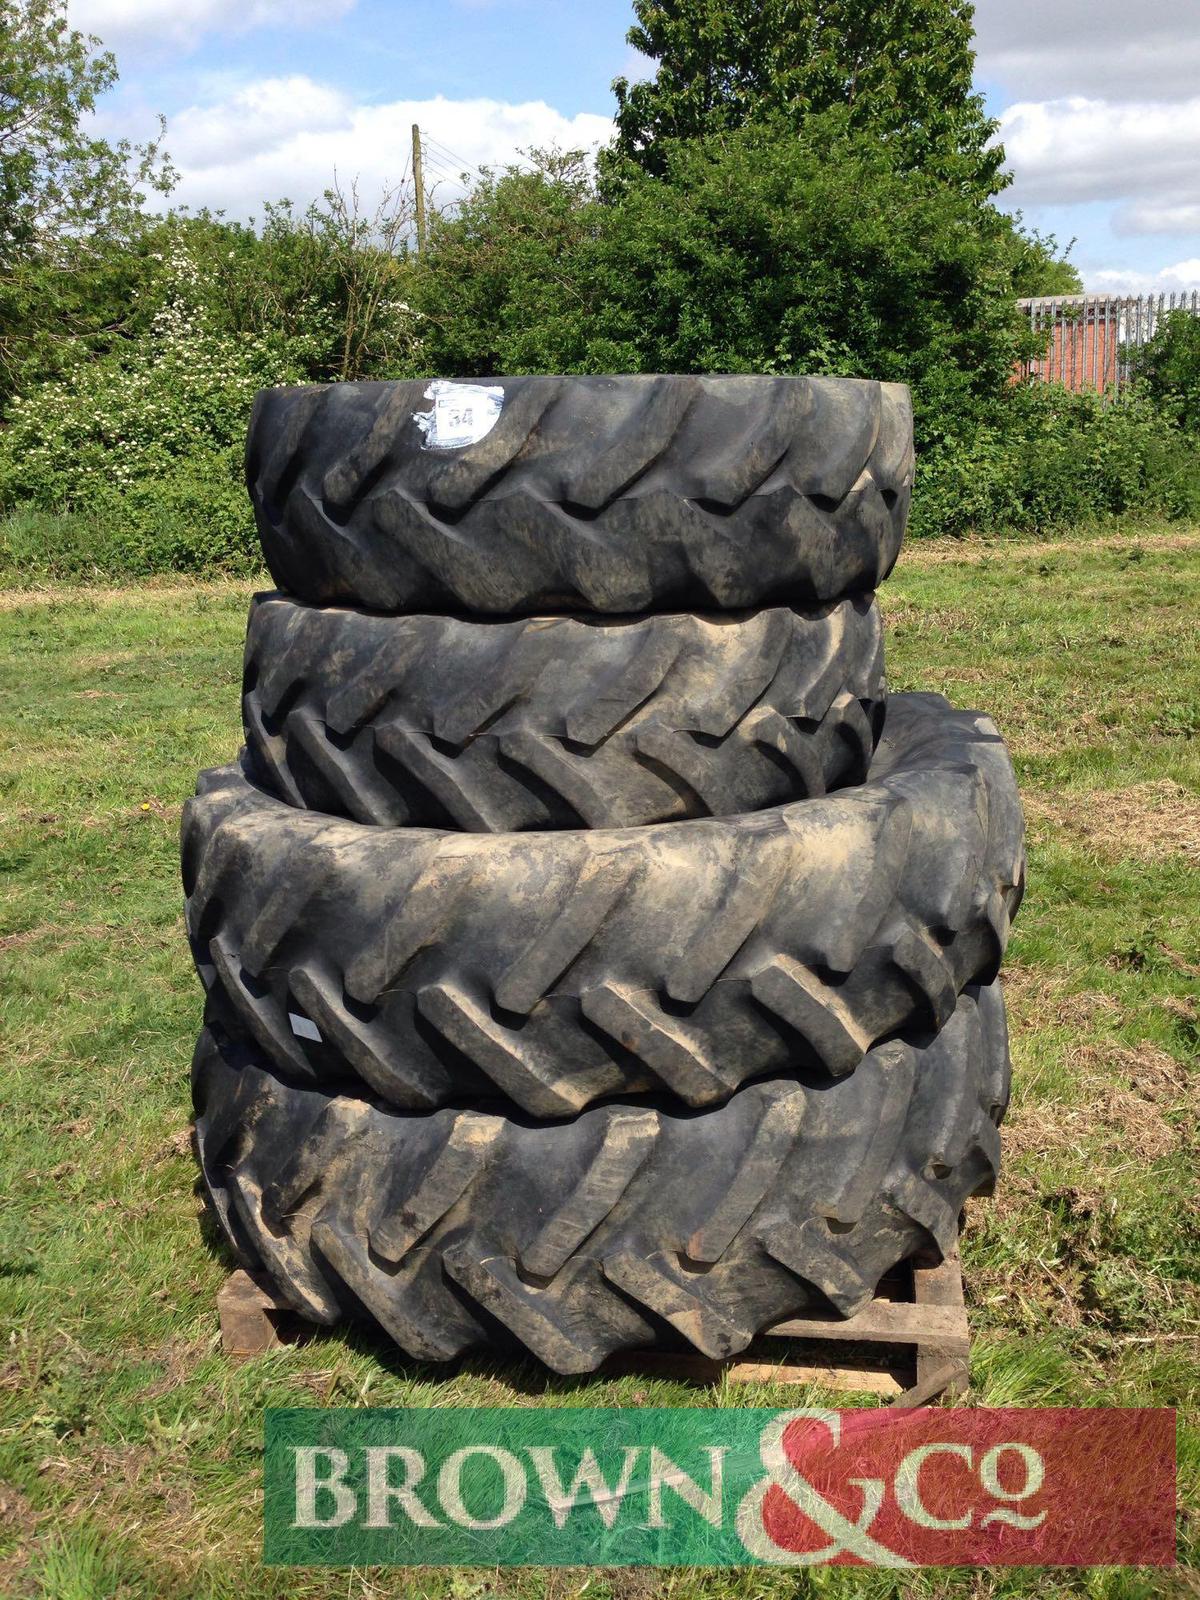 Set of 16.9 x 34, 13.6 x 24 tyres